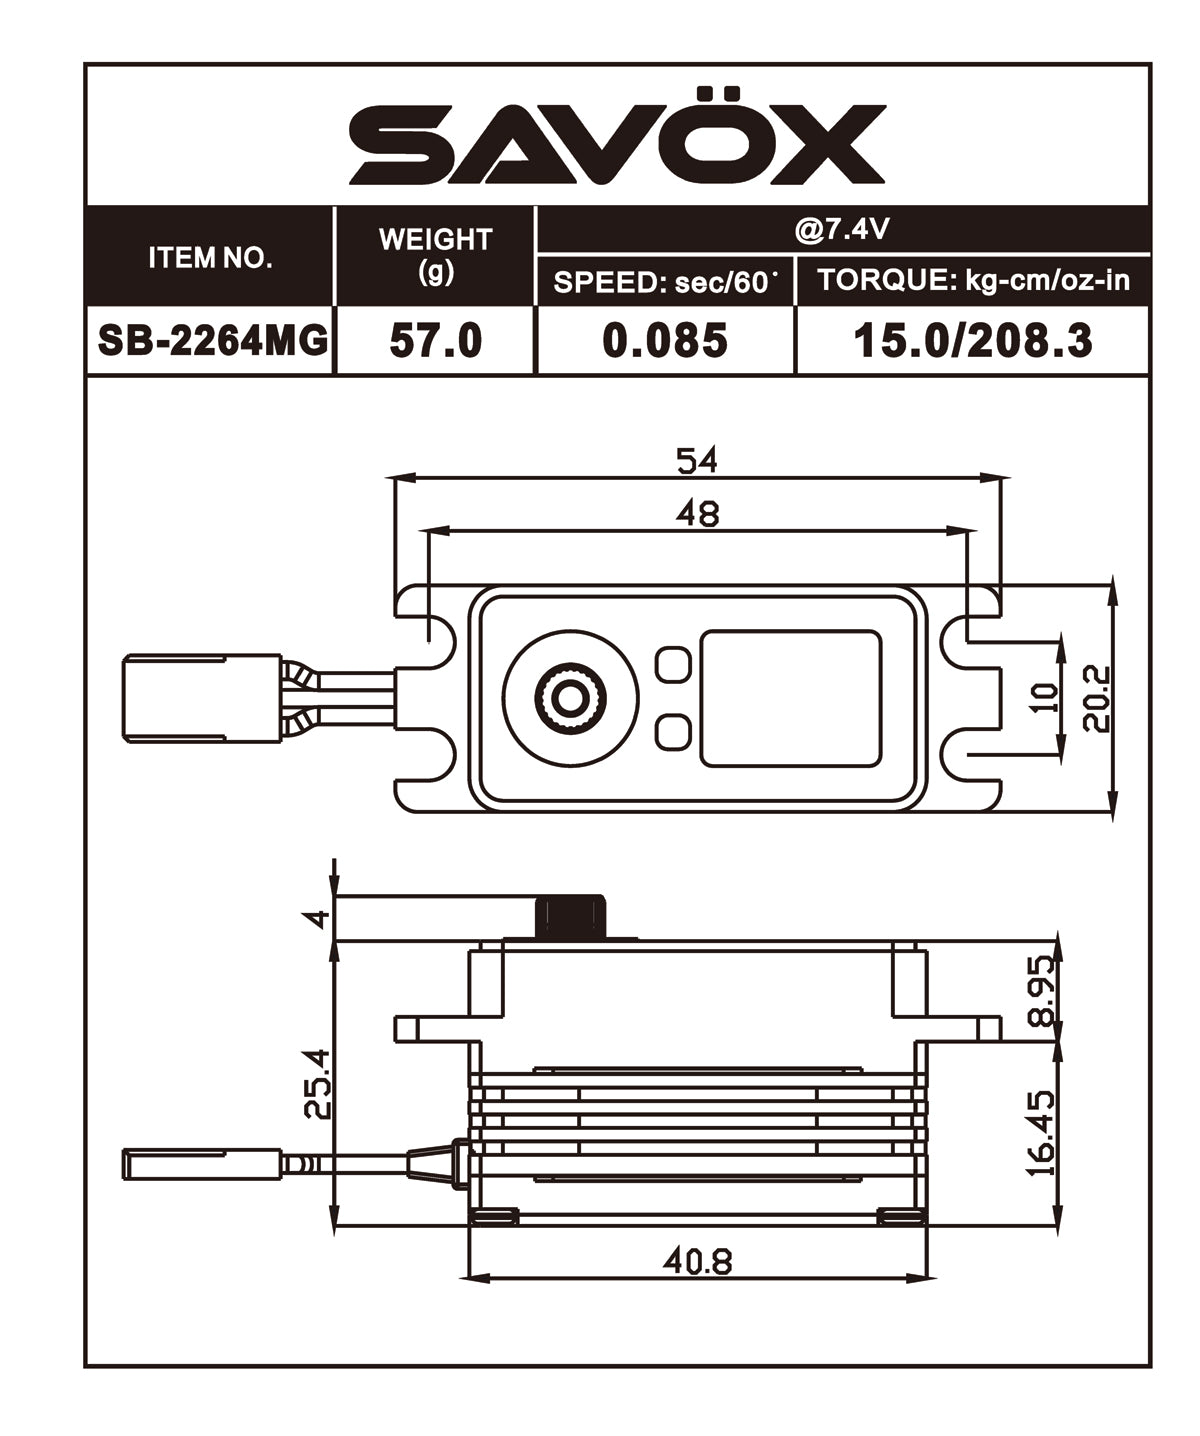 SAVSB2264MG Servo sin escobillas de alto voltaje y perfil bajo 0,085 s/208,3 oz a 7,4 V